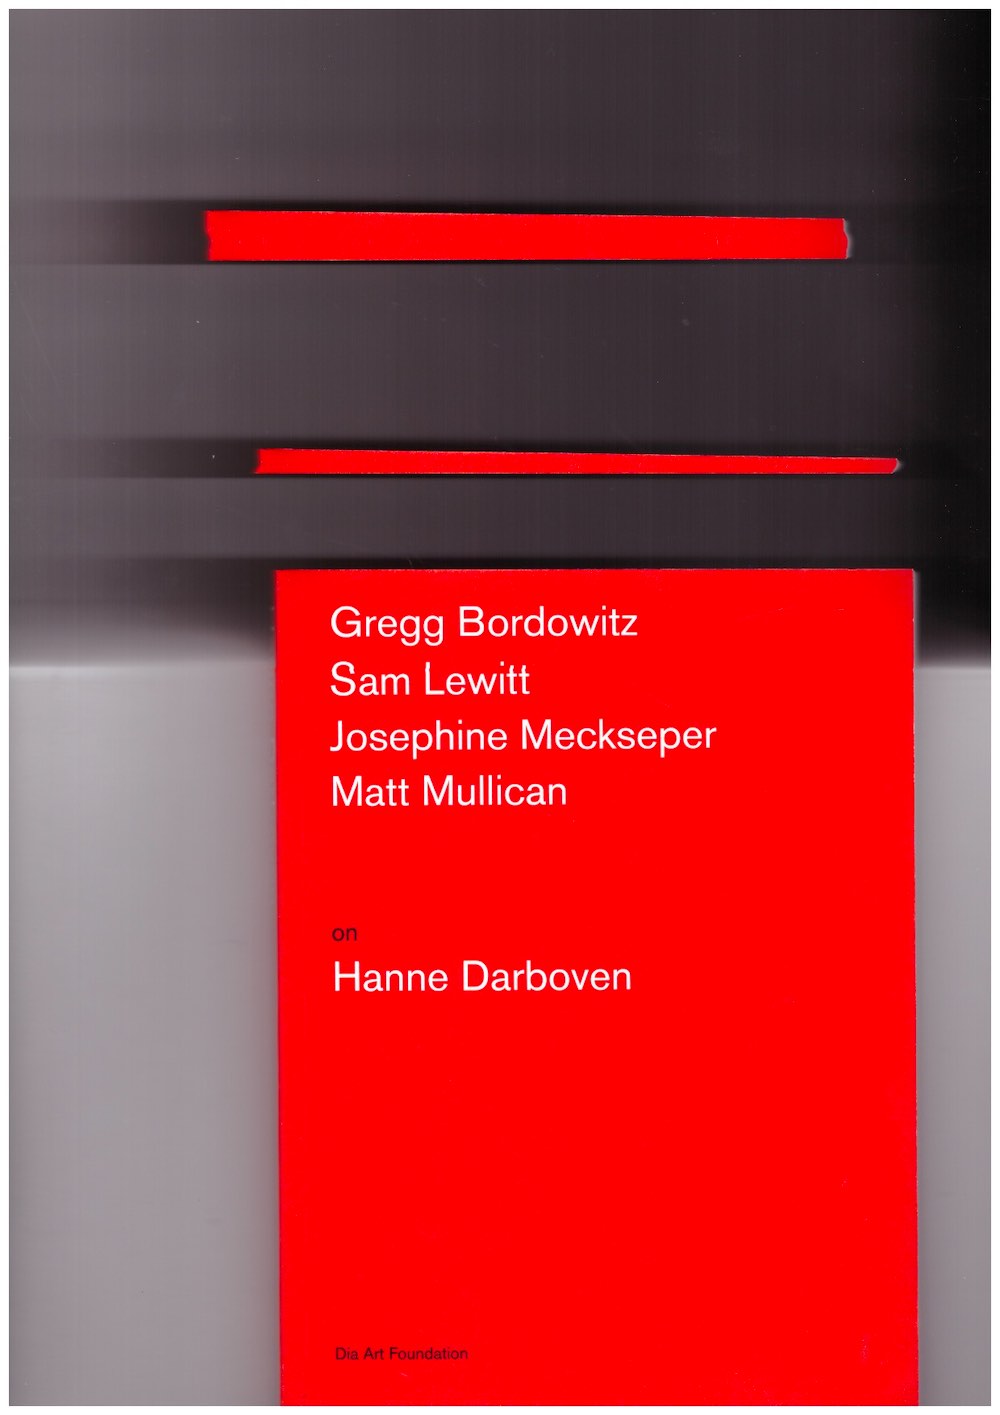 DARBOVEN, Hanne; HOBAN, Stephen (ed.); KIVLAND, Kelly (ed.); ATKINS, Katherine (ed.)  - Artists on Hanne Darboven